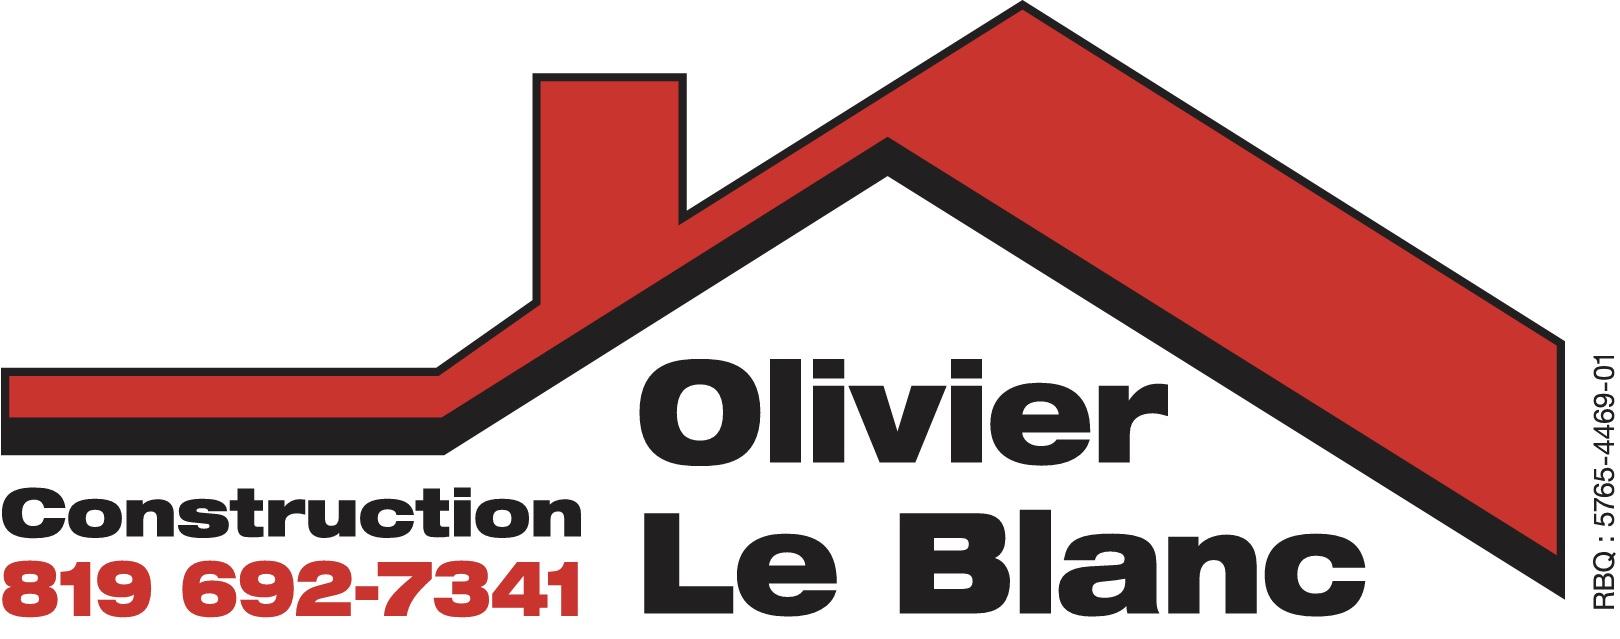 Construction Olivier Le Blanc